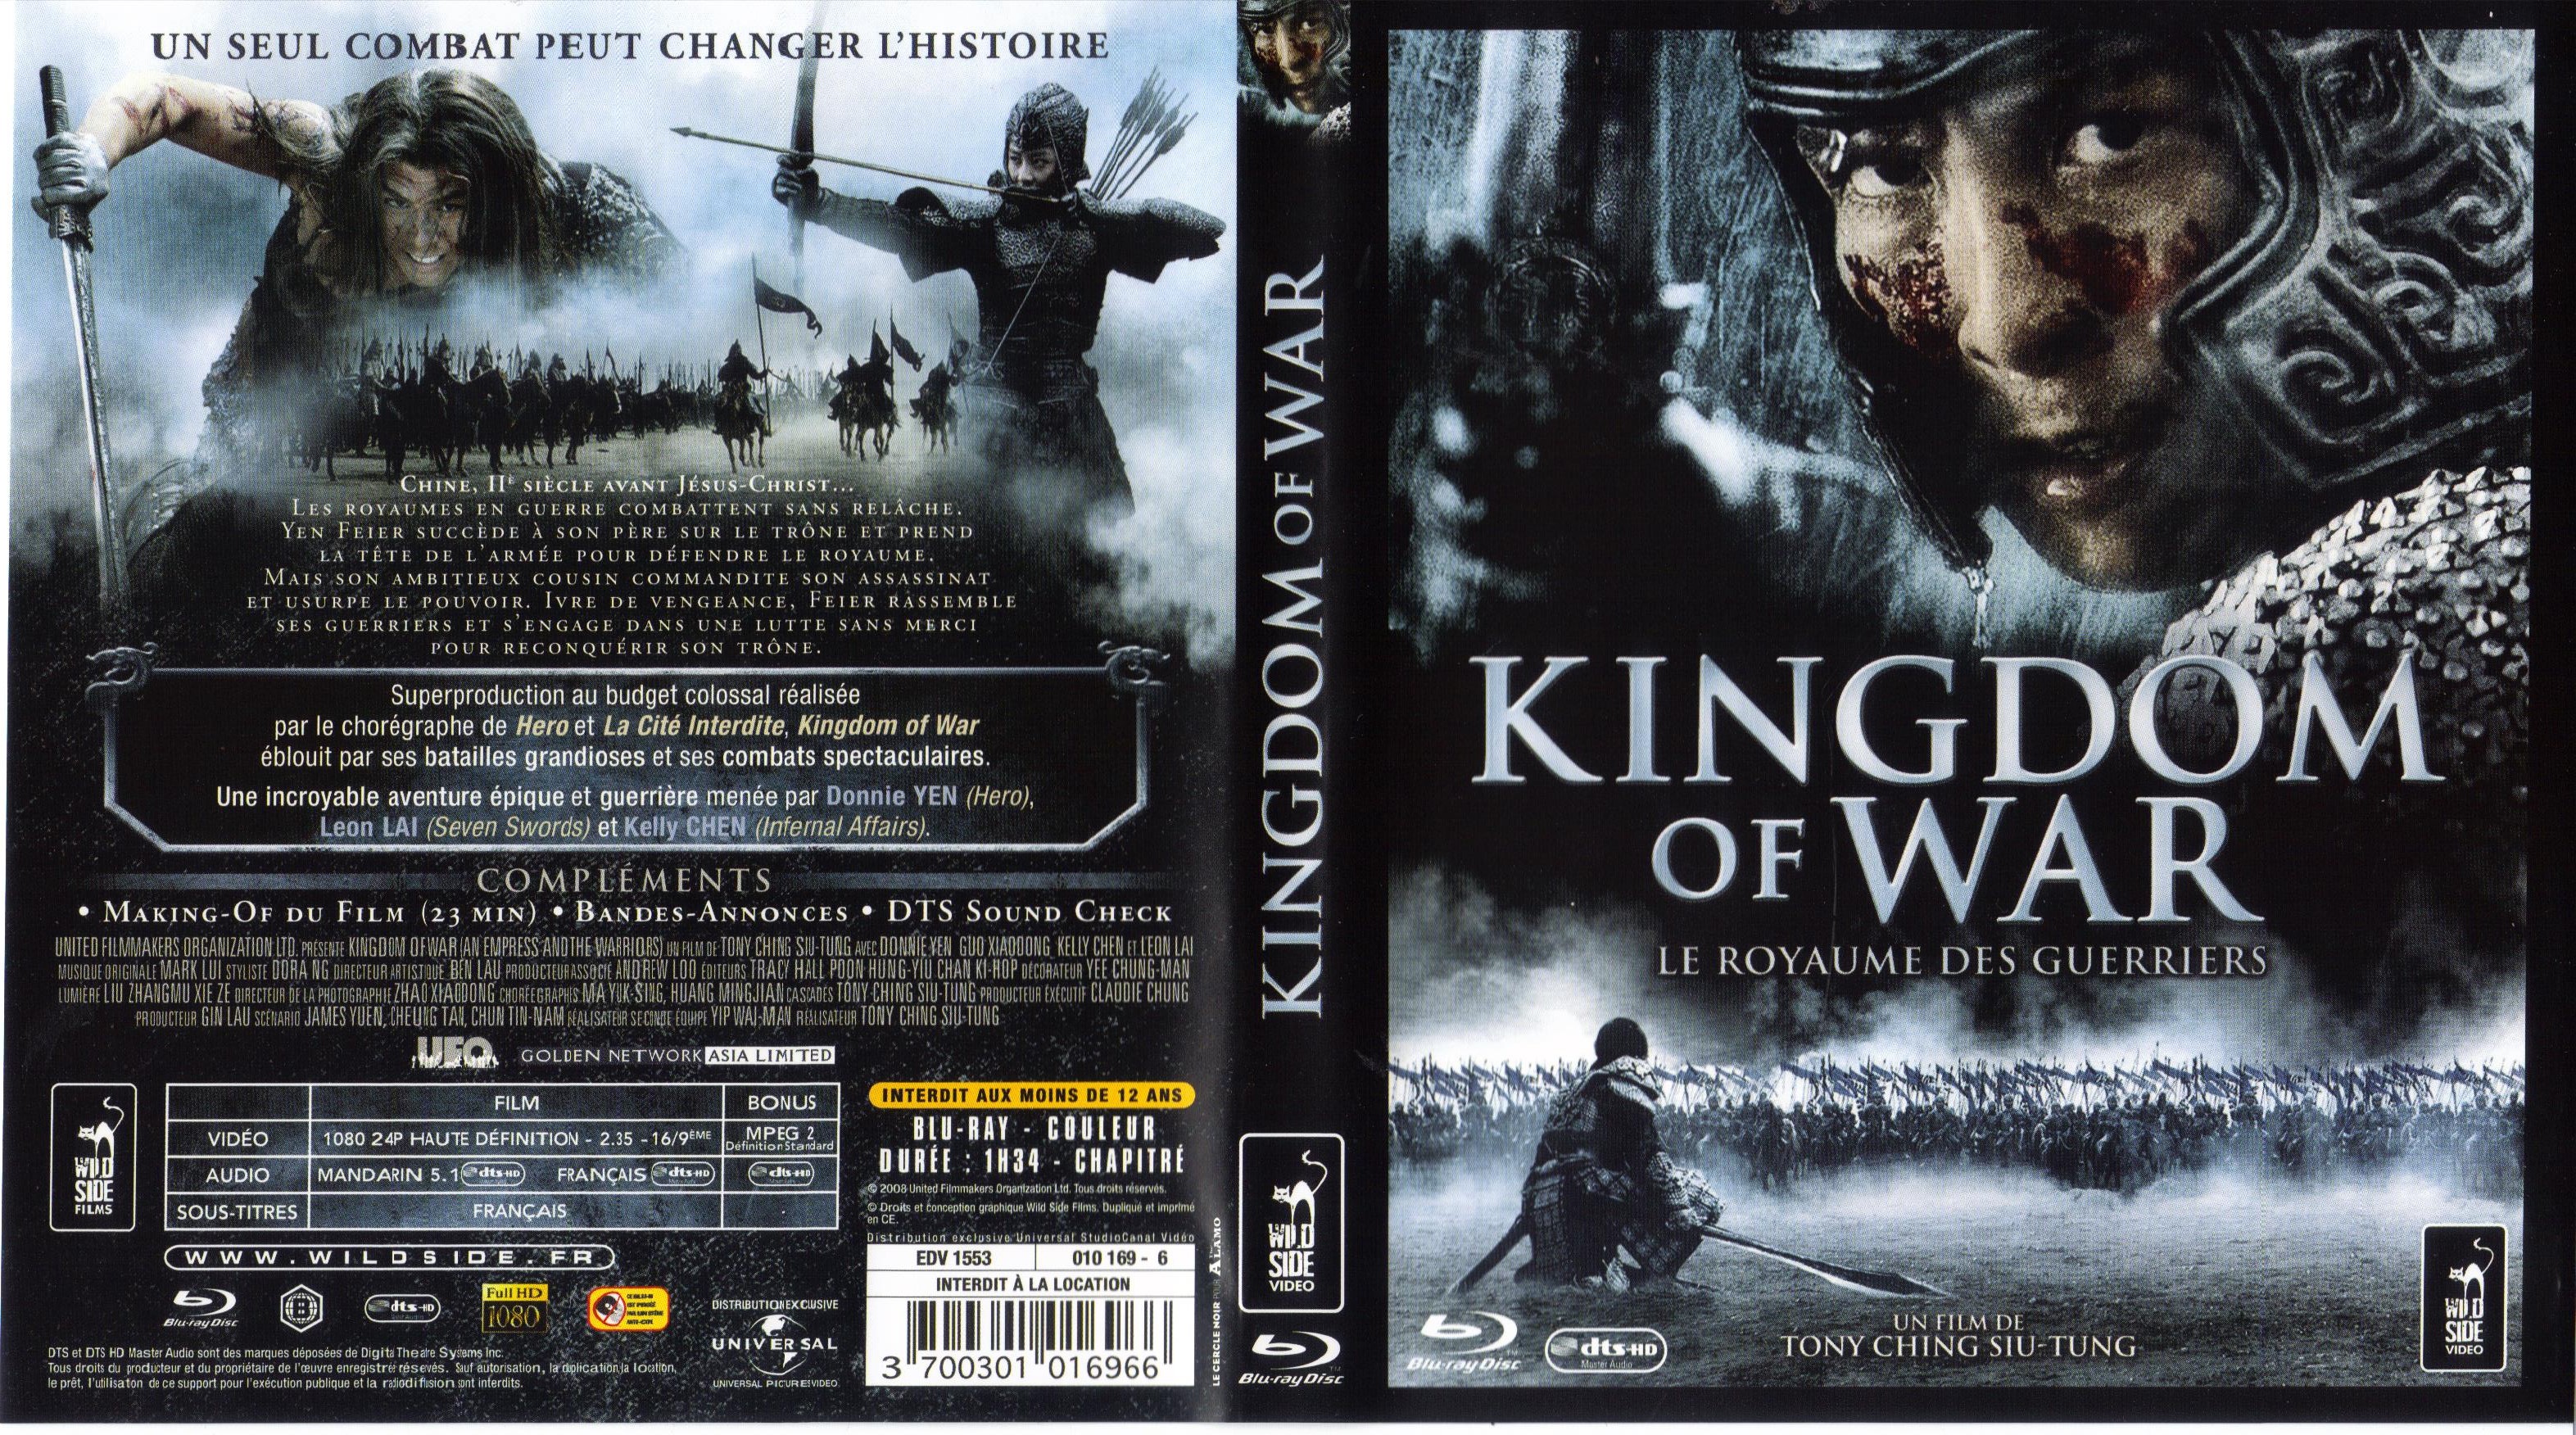 Jaquette DVD Kingdom of war (BLU-RAY)